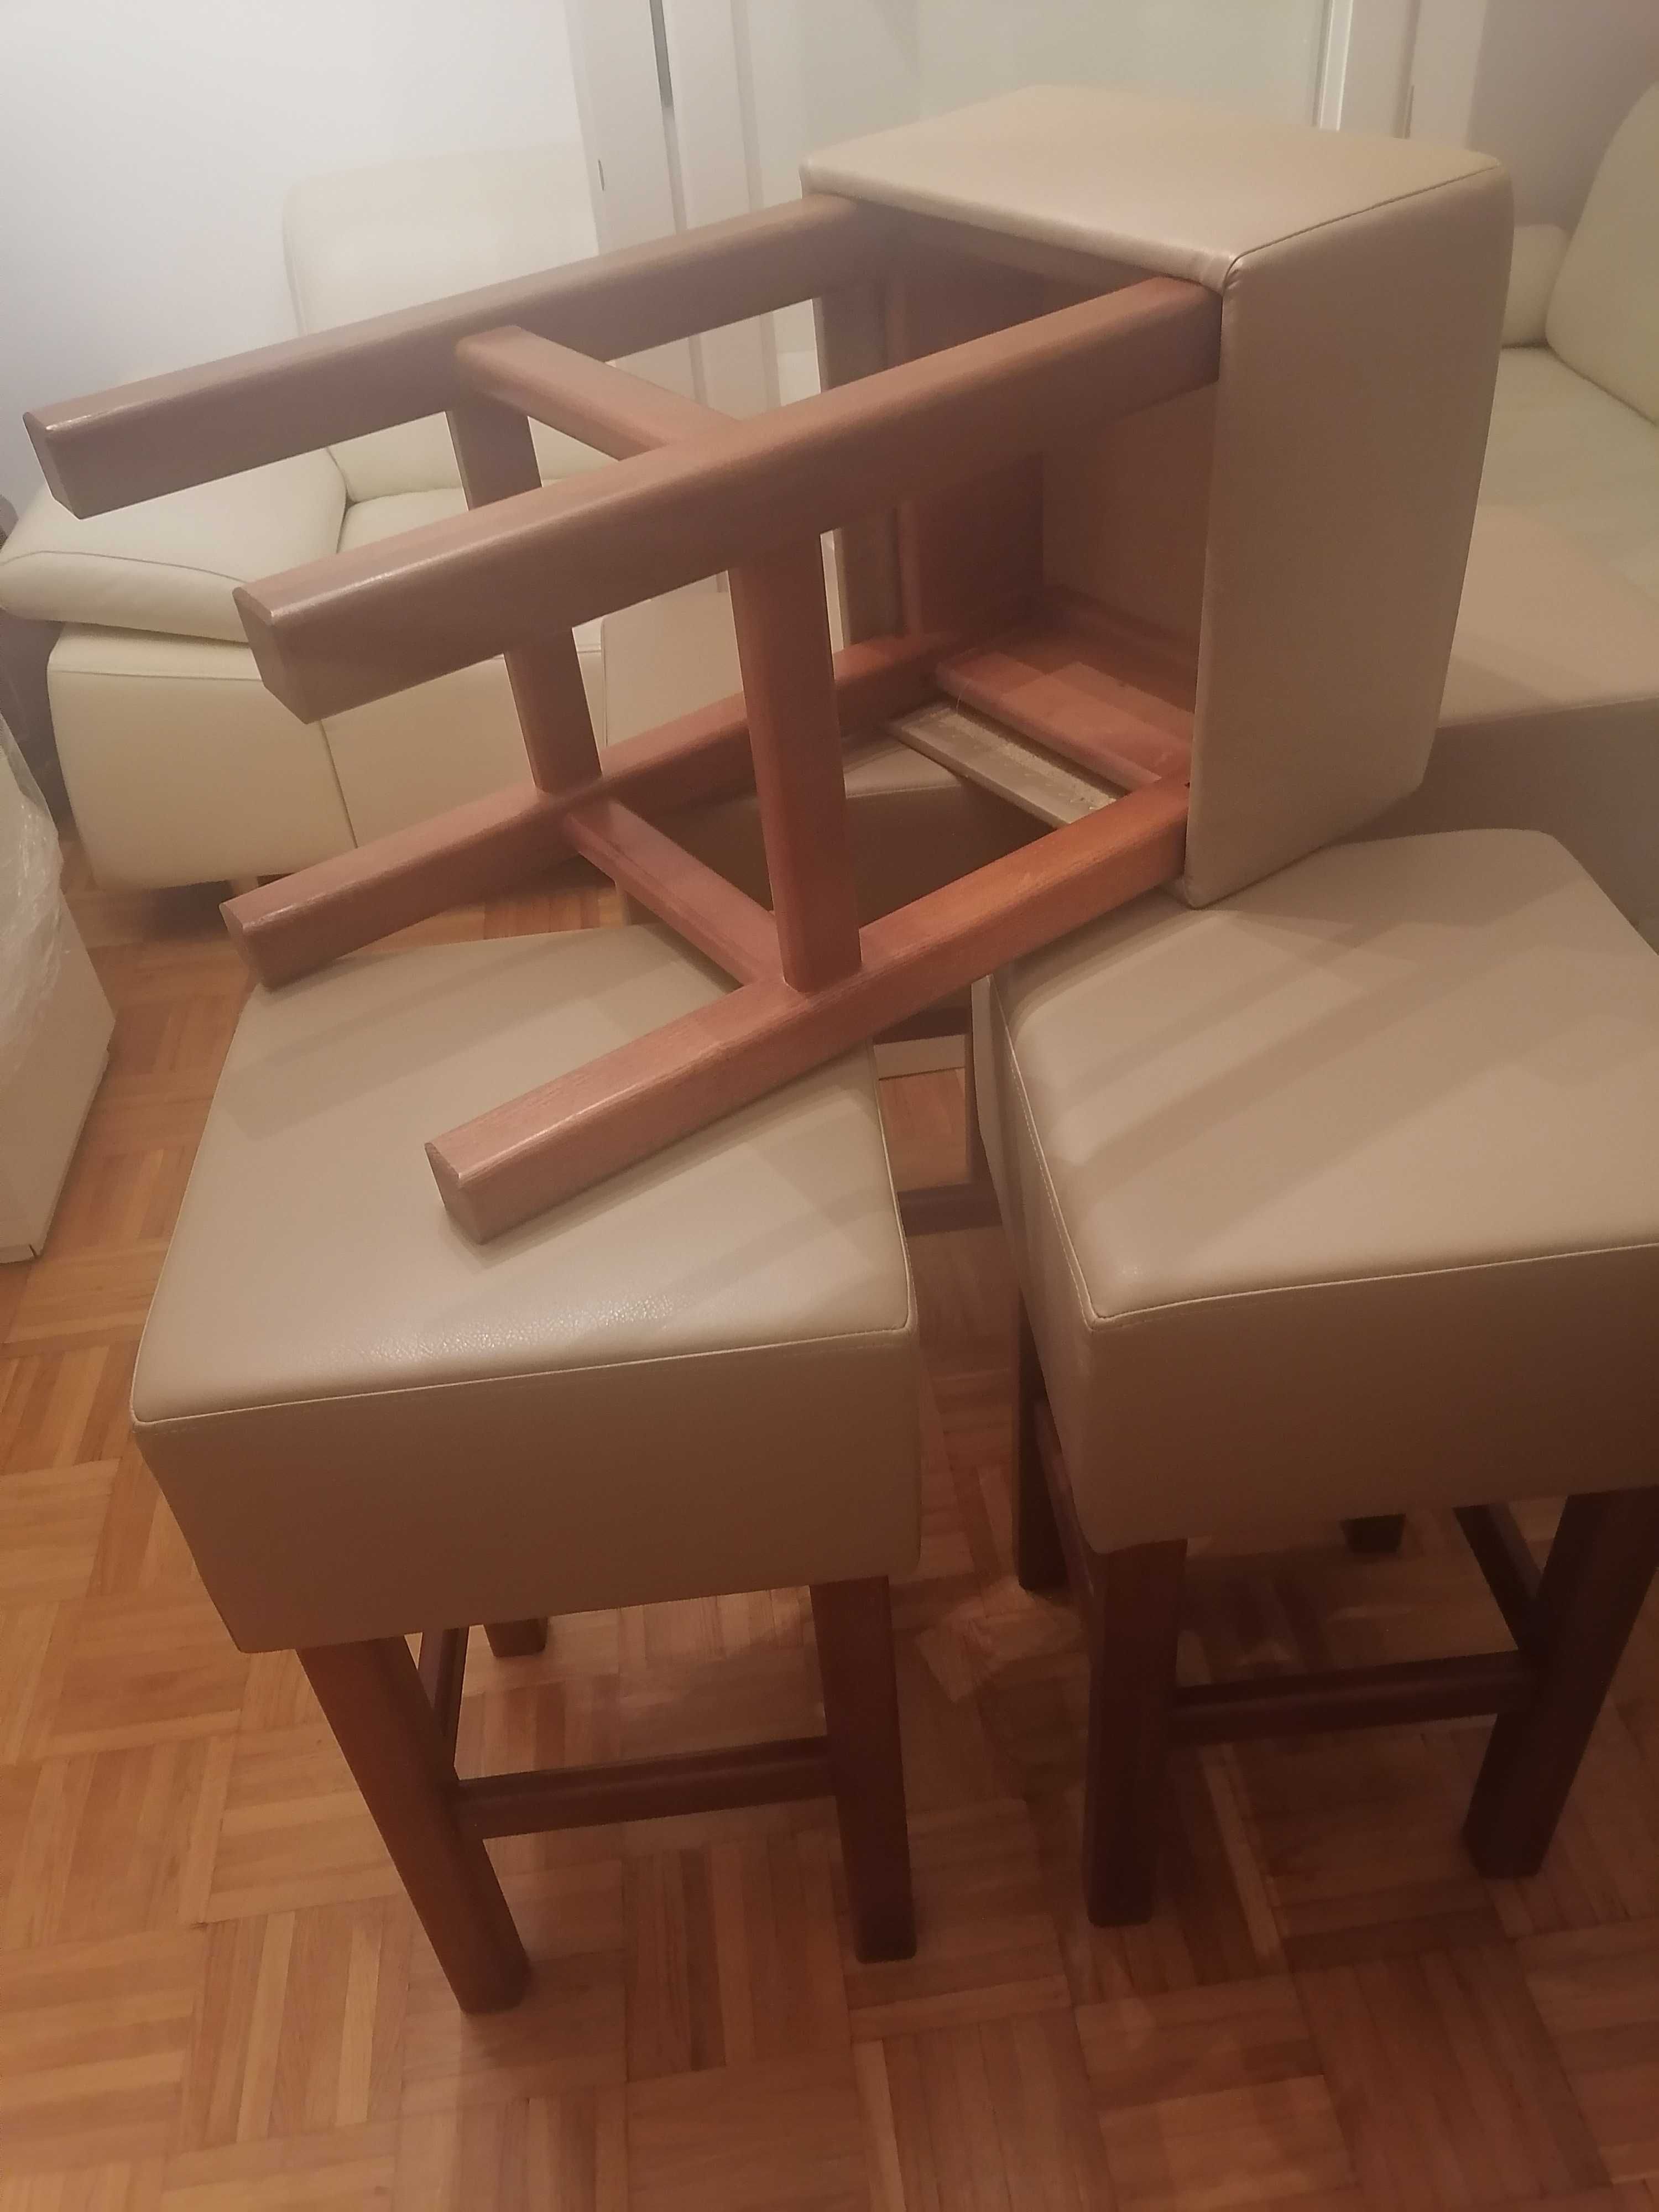 Nowe hokery dębowe barowe krzesła